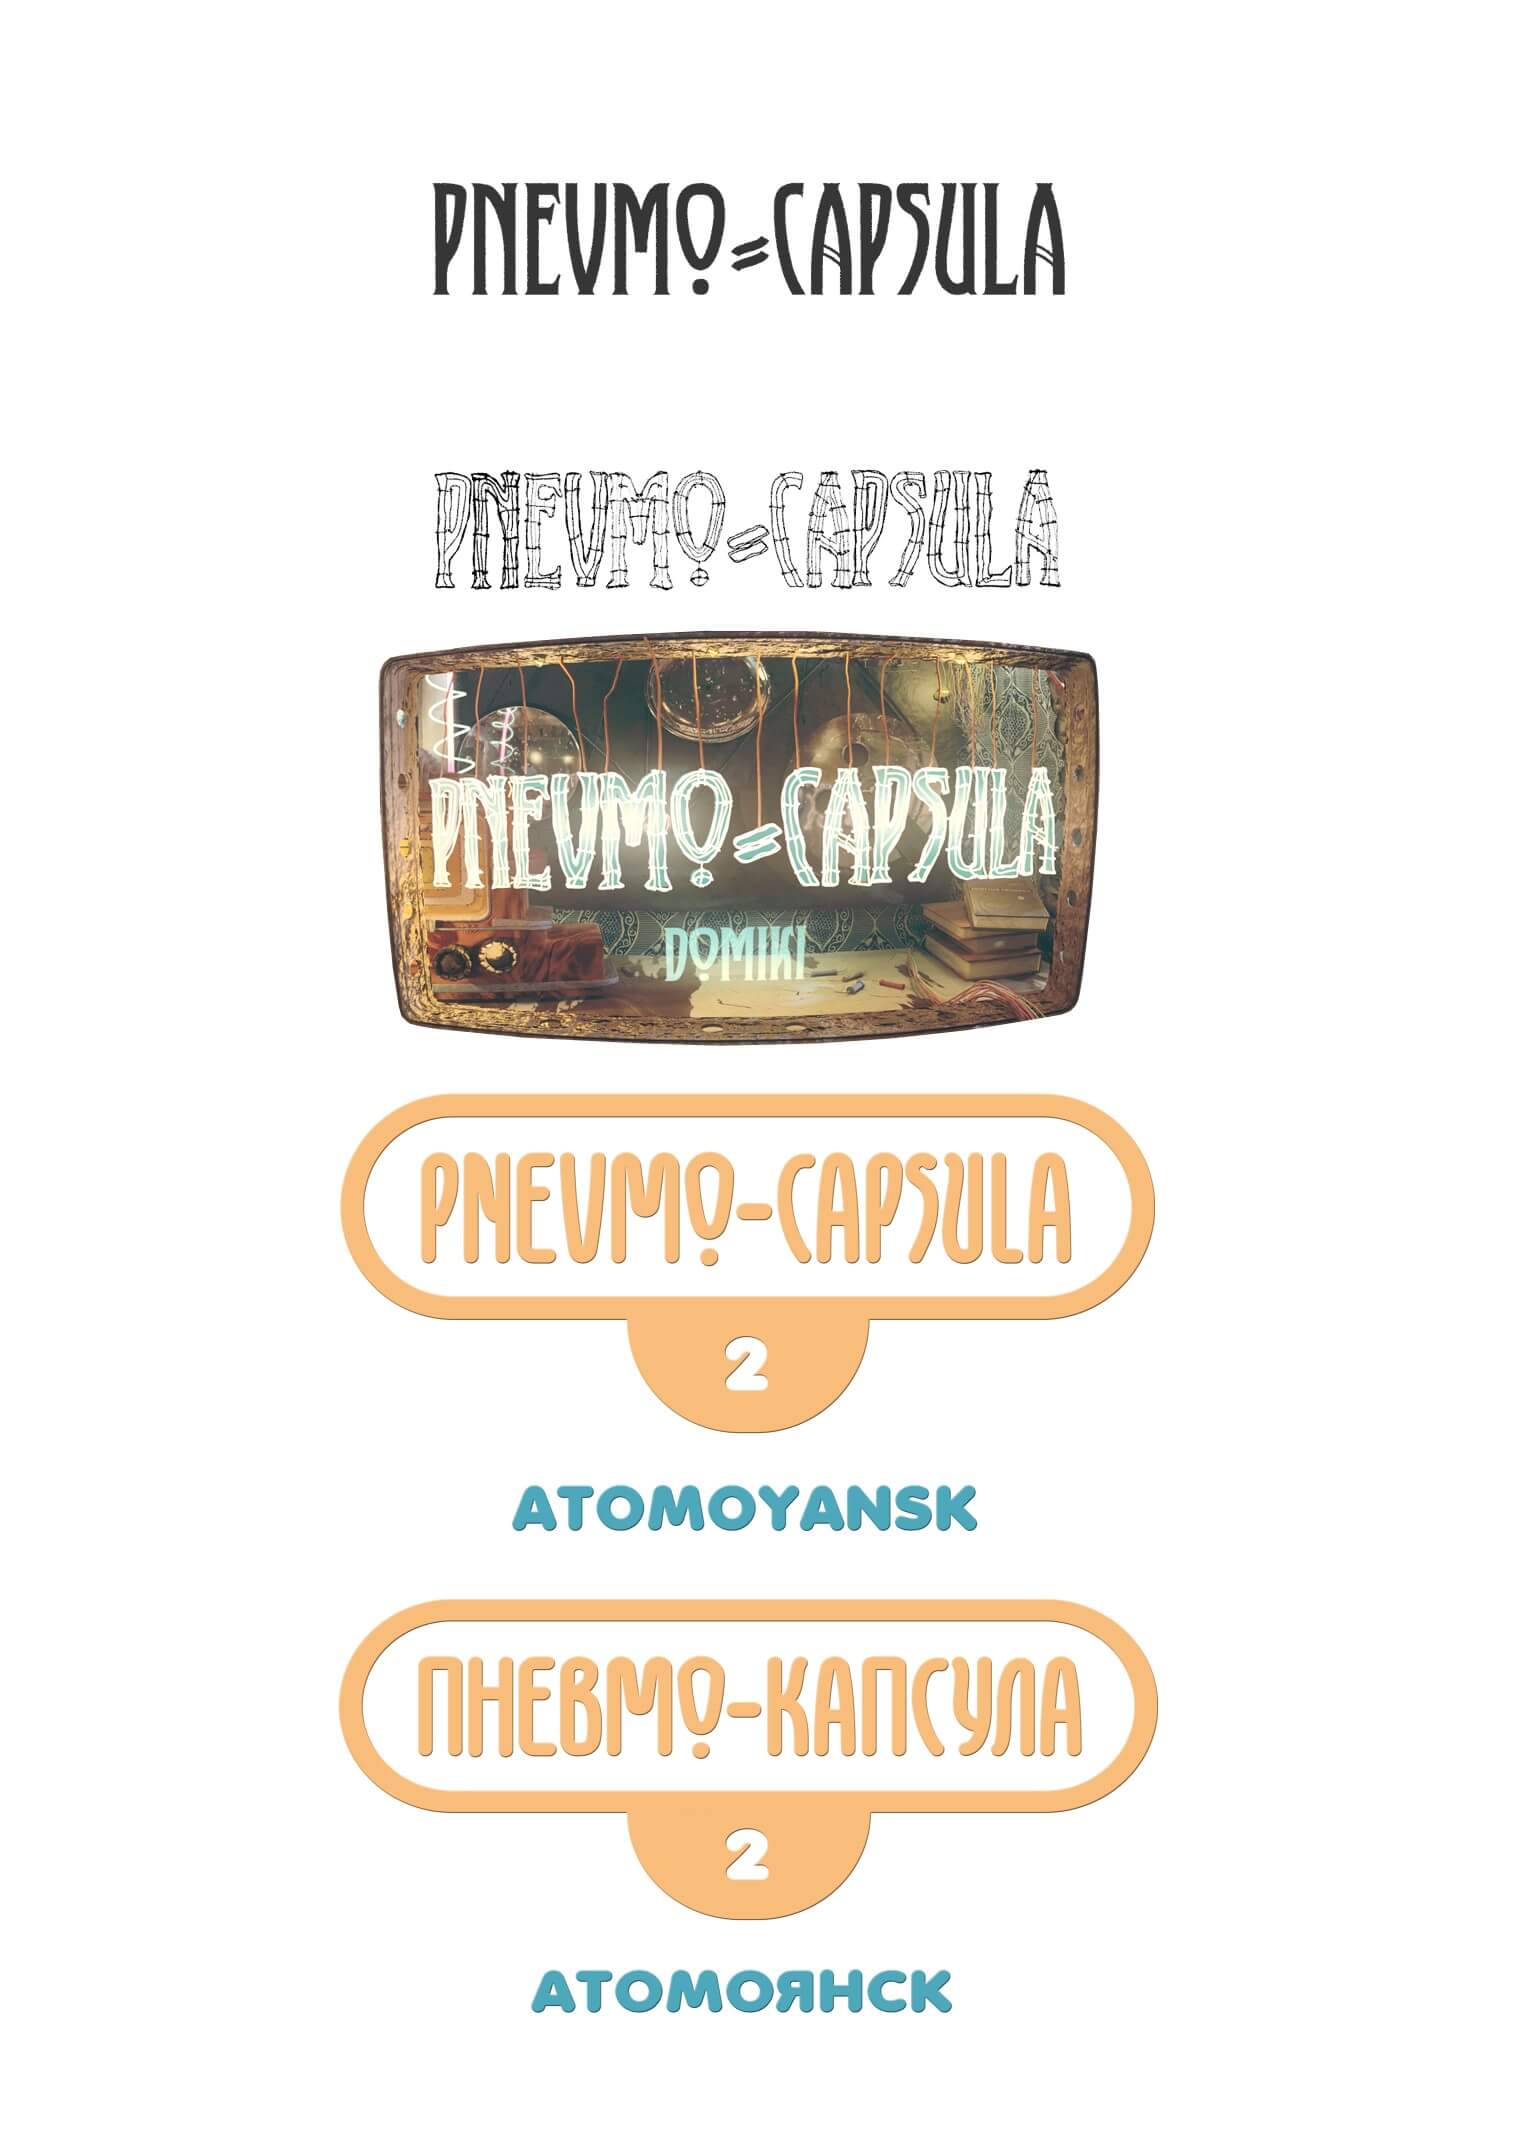 логотип игры пневмокапсула, pnevmocapsula game logo